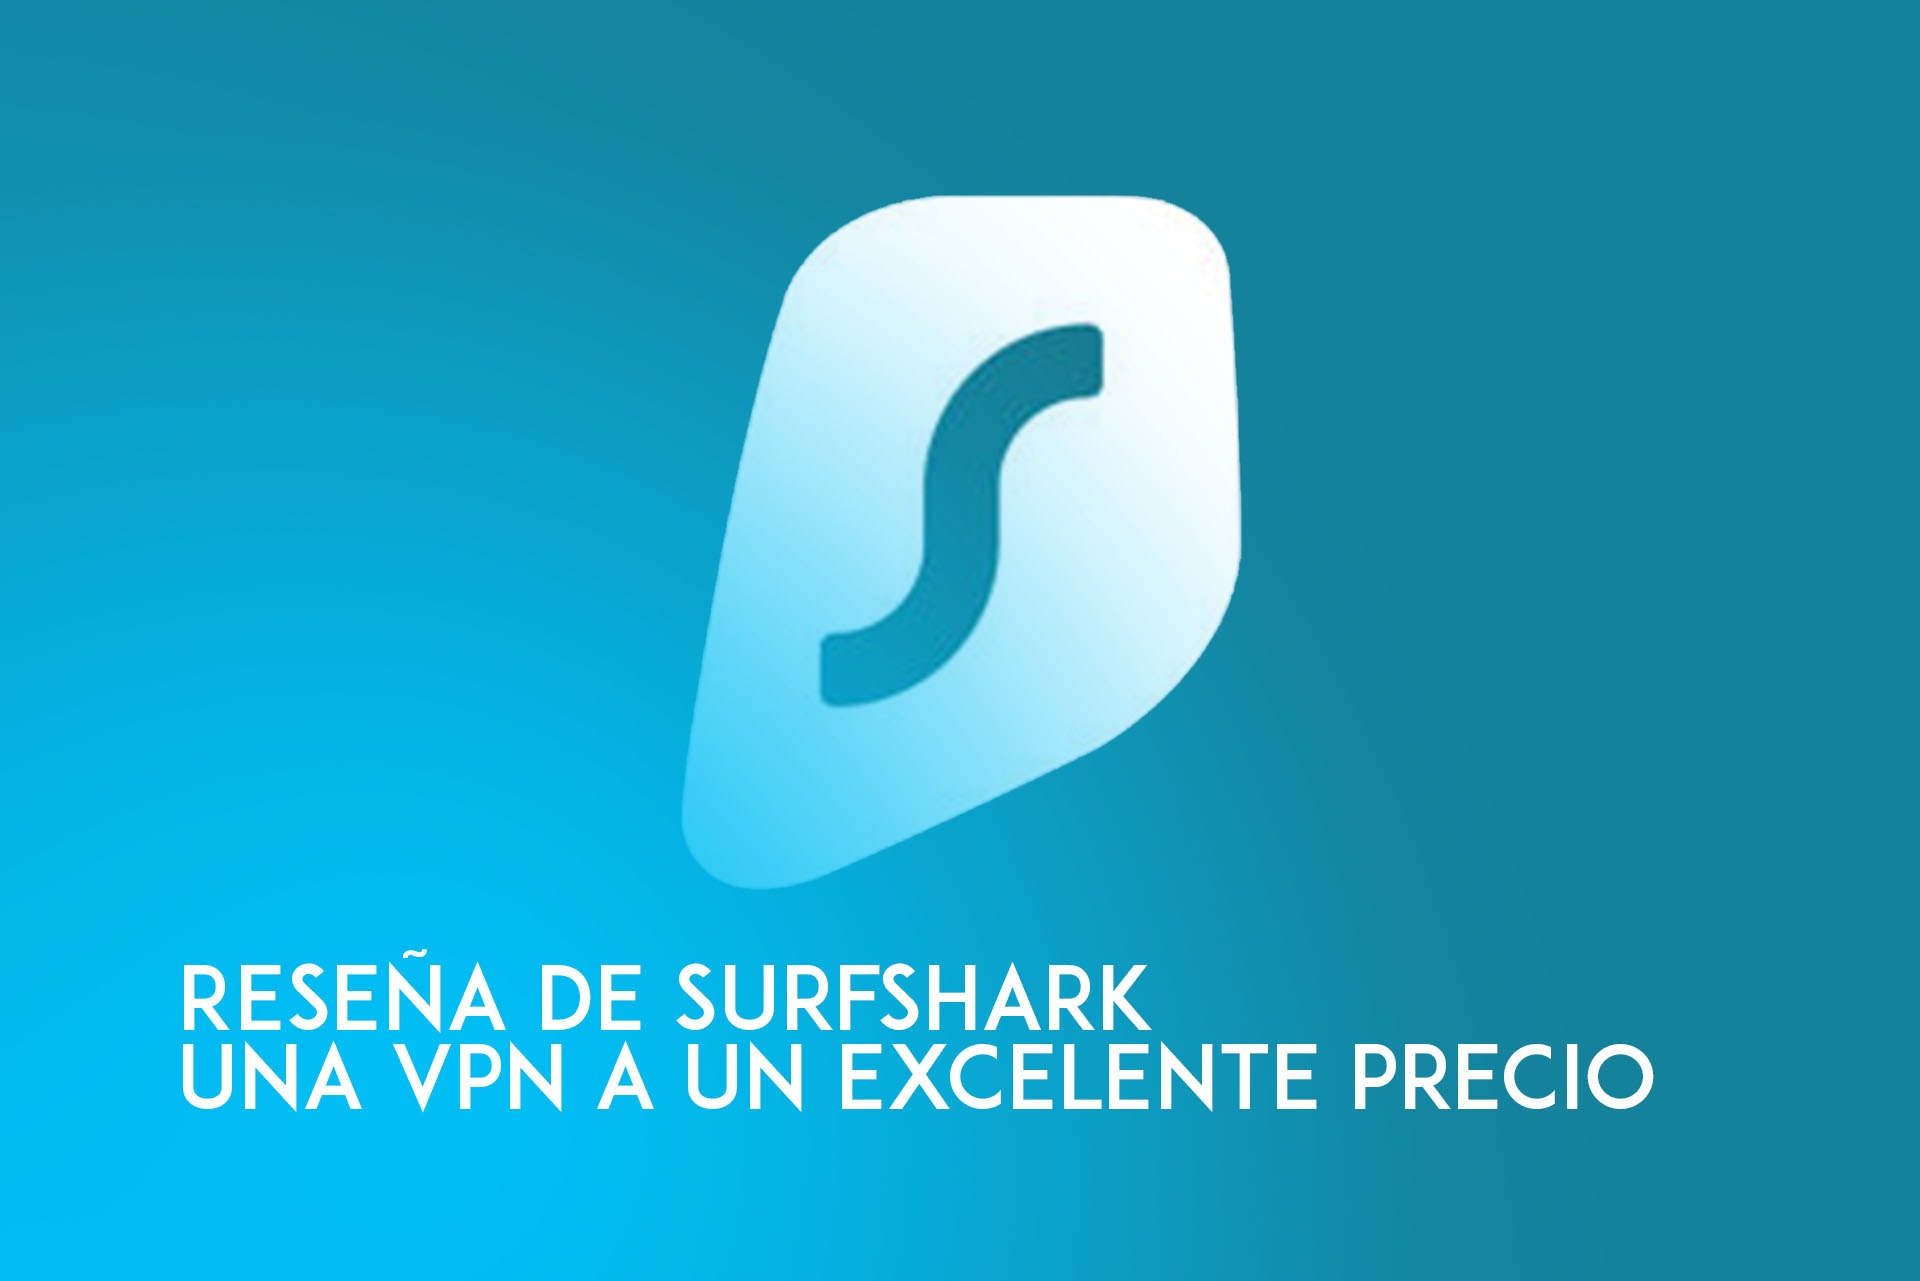 surfshark reseña a vpn con mejor relación calidad precio